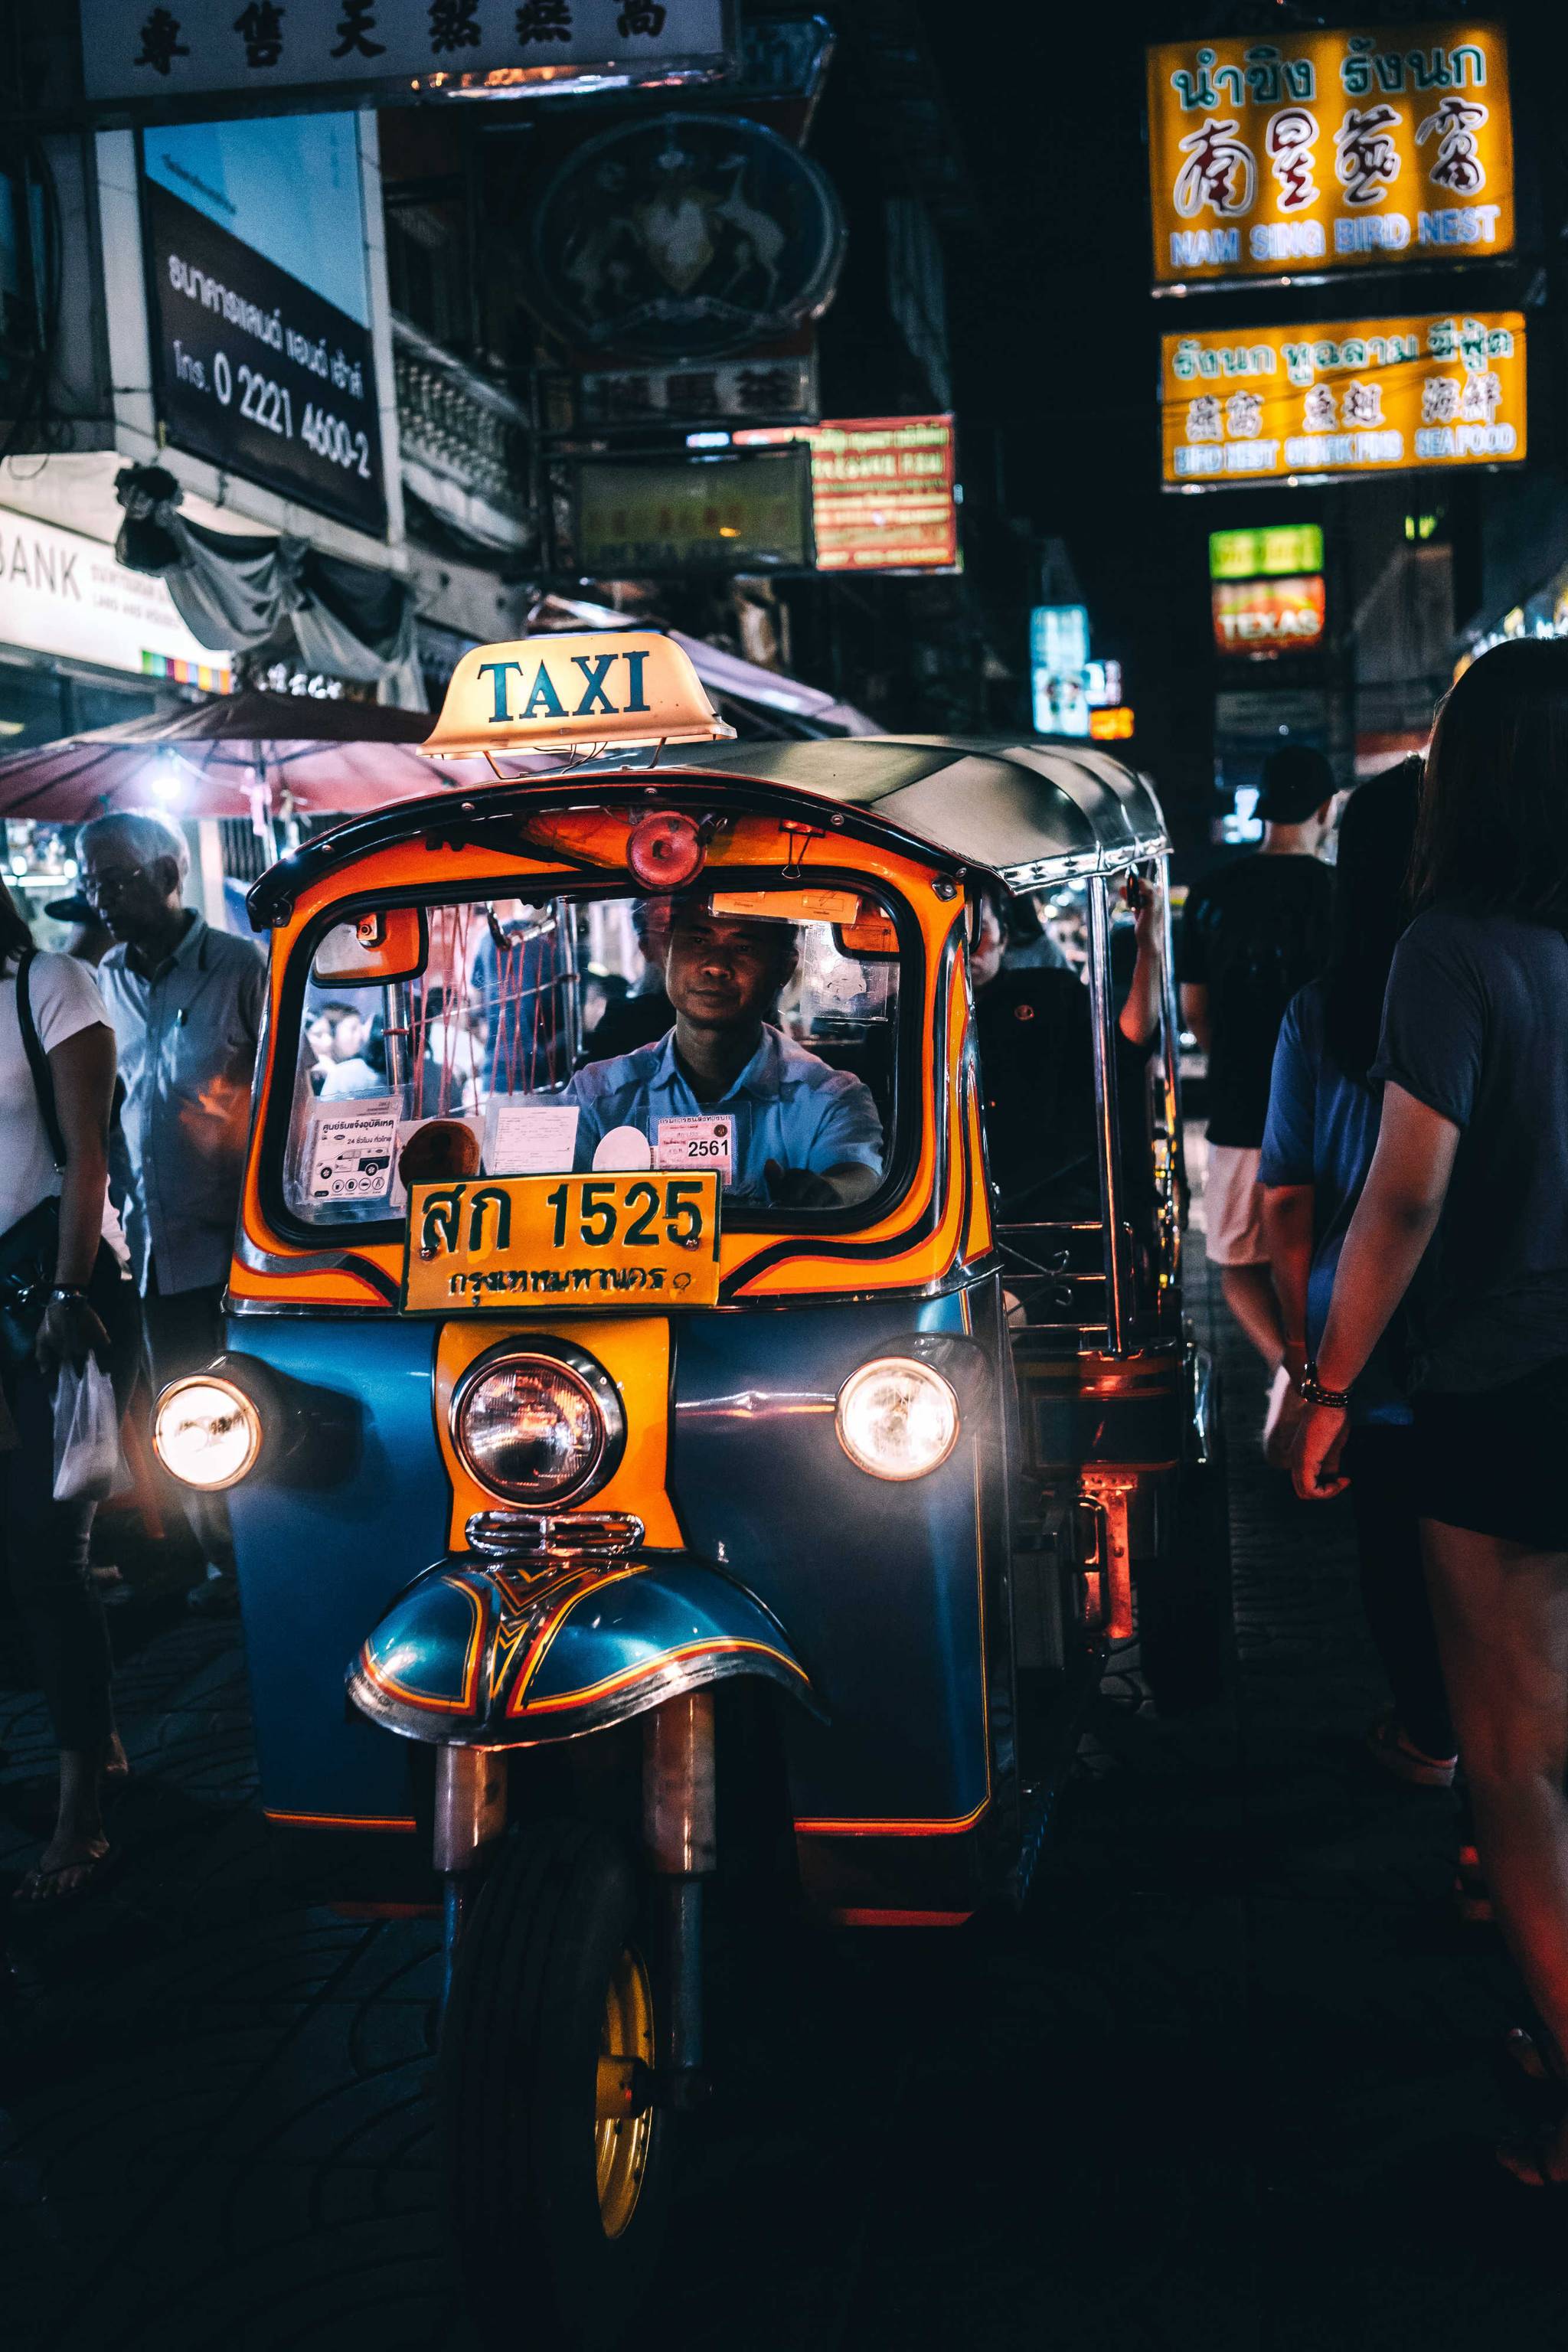 Delhi transport app helps people find safer rides